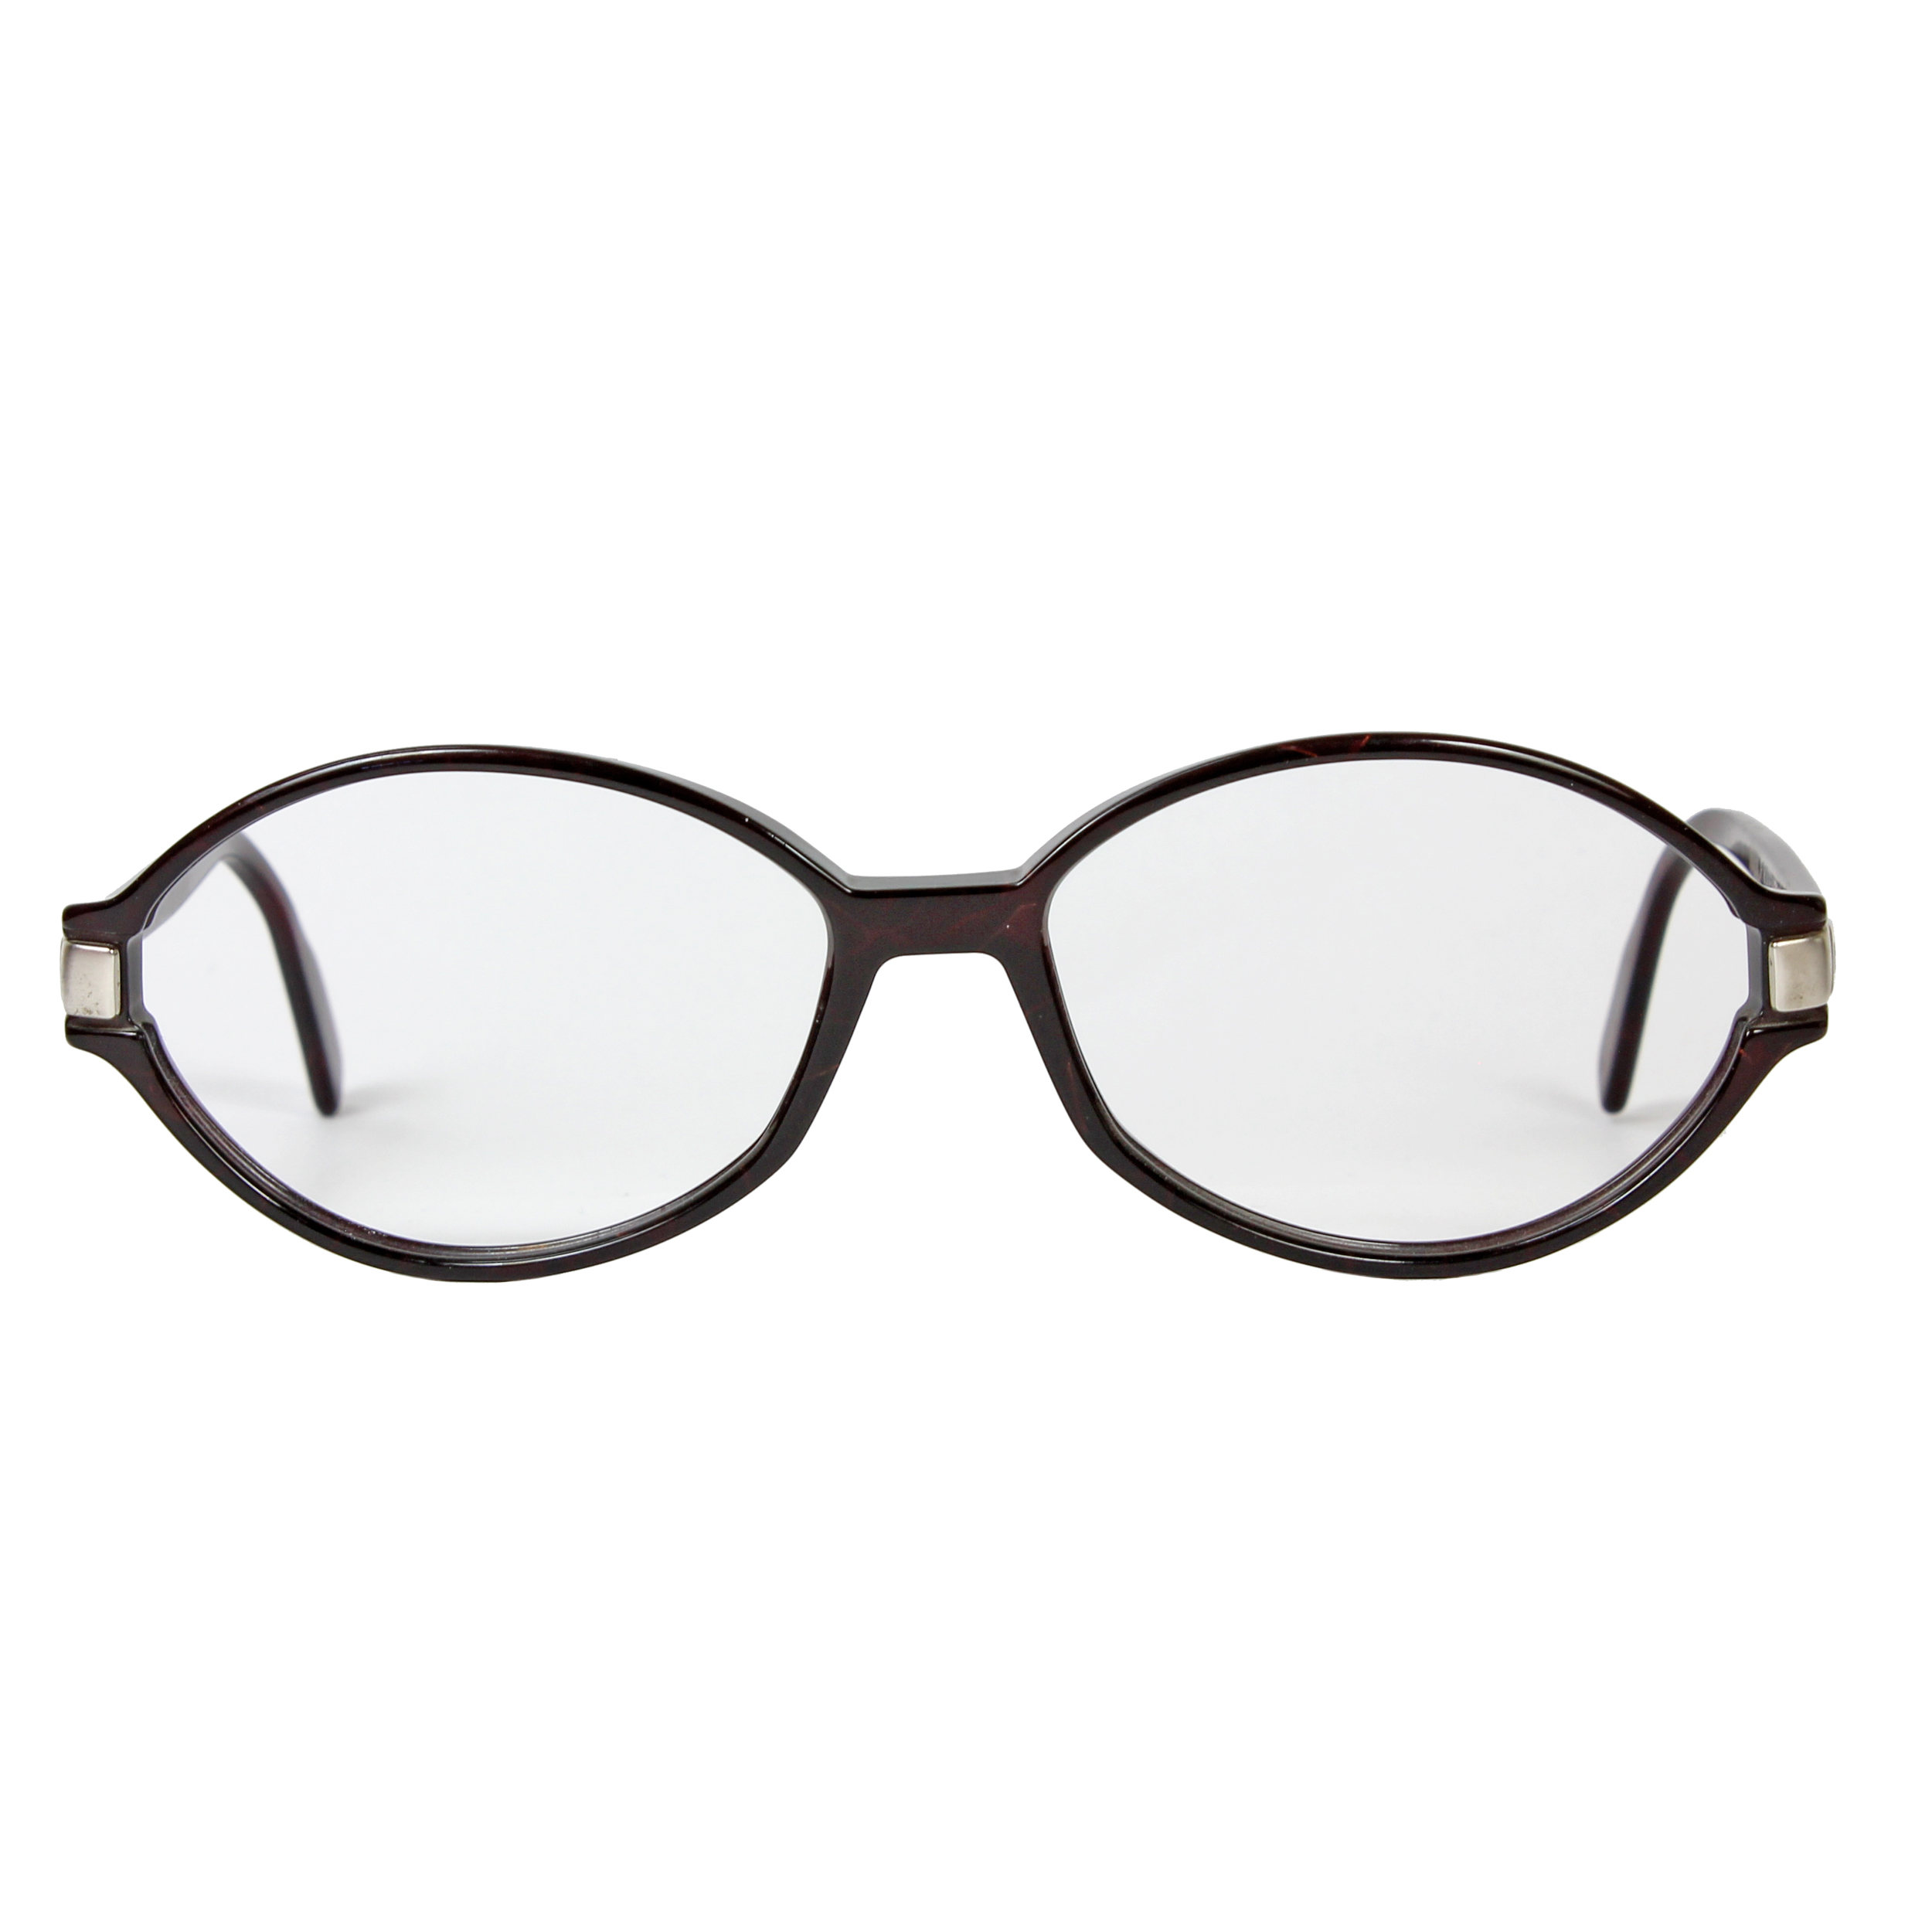 فریم عینک طبی رودن اشتوک مدل R7203